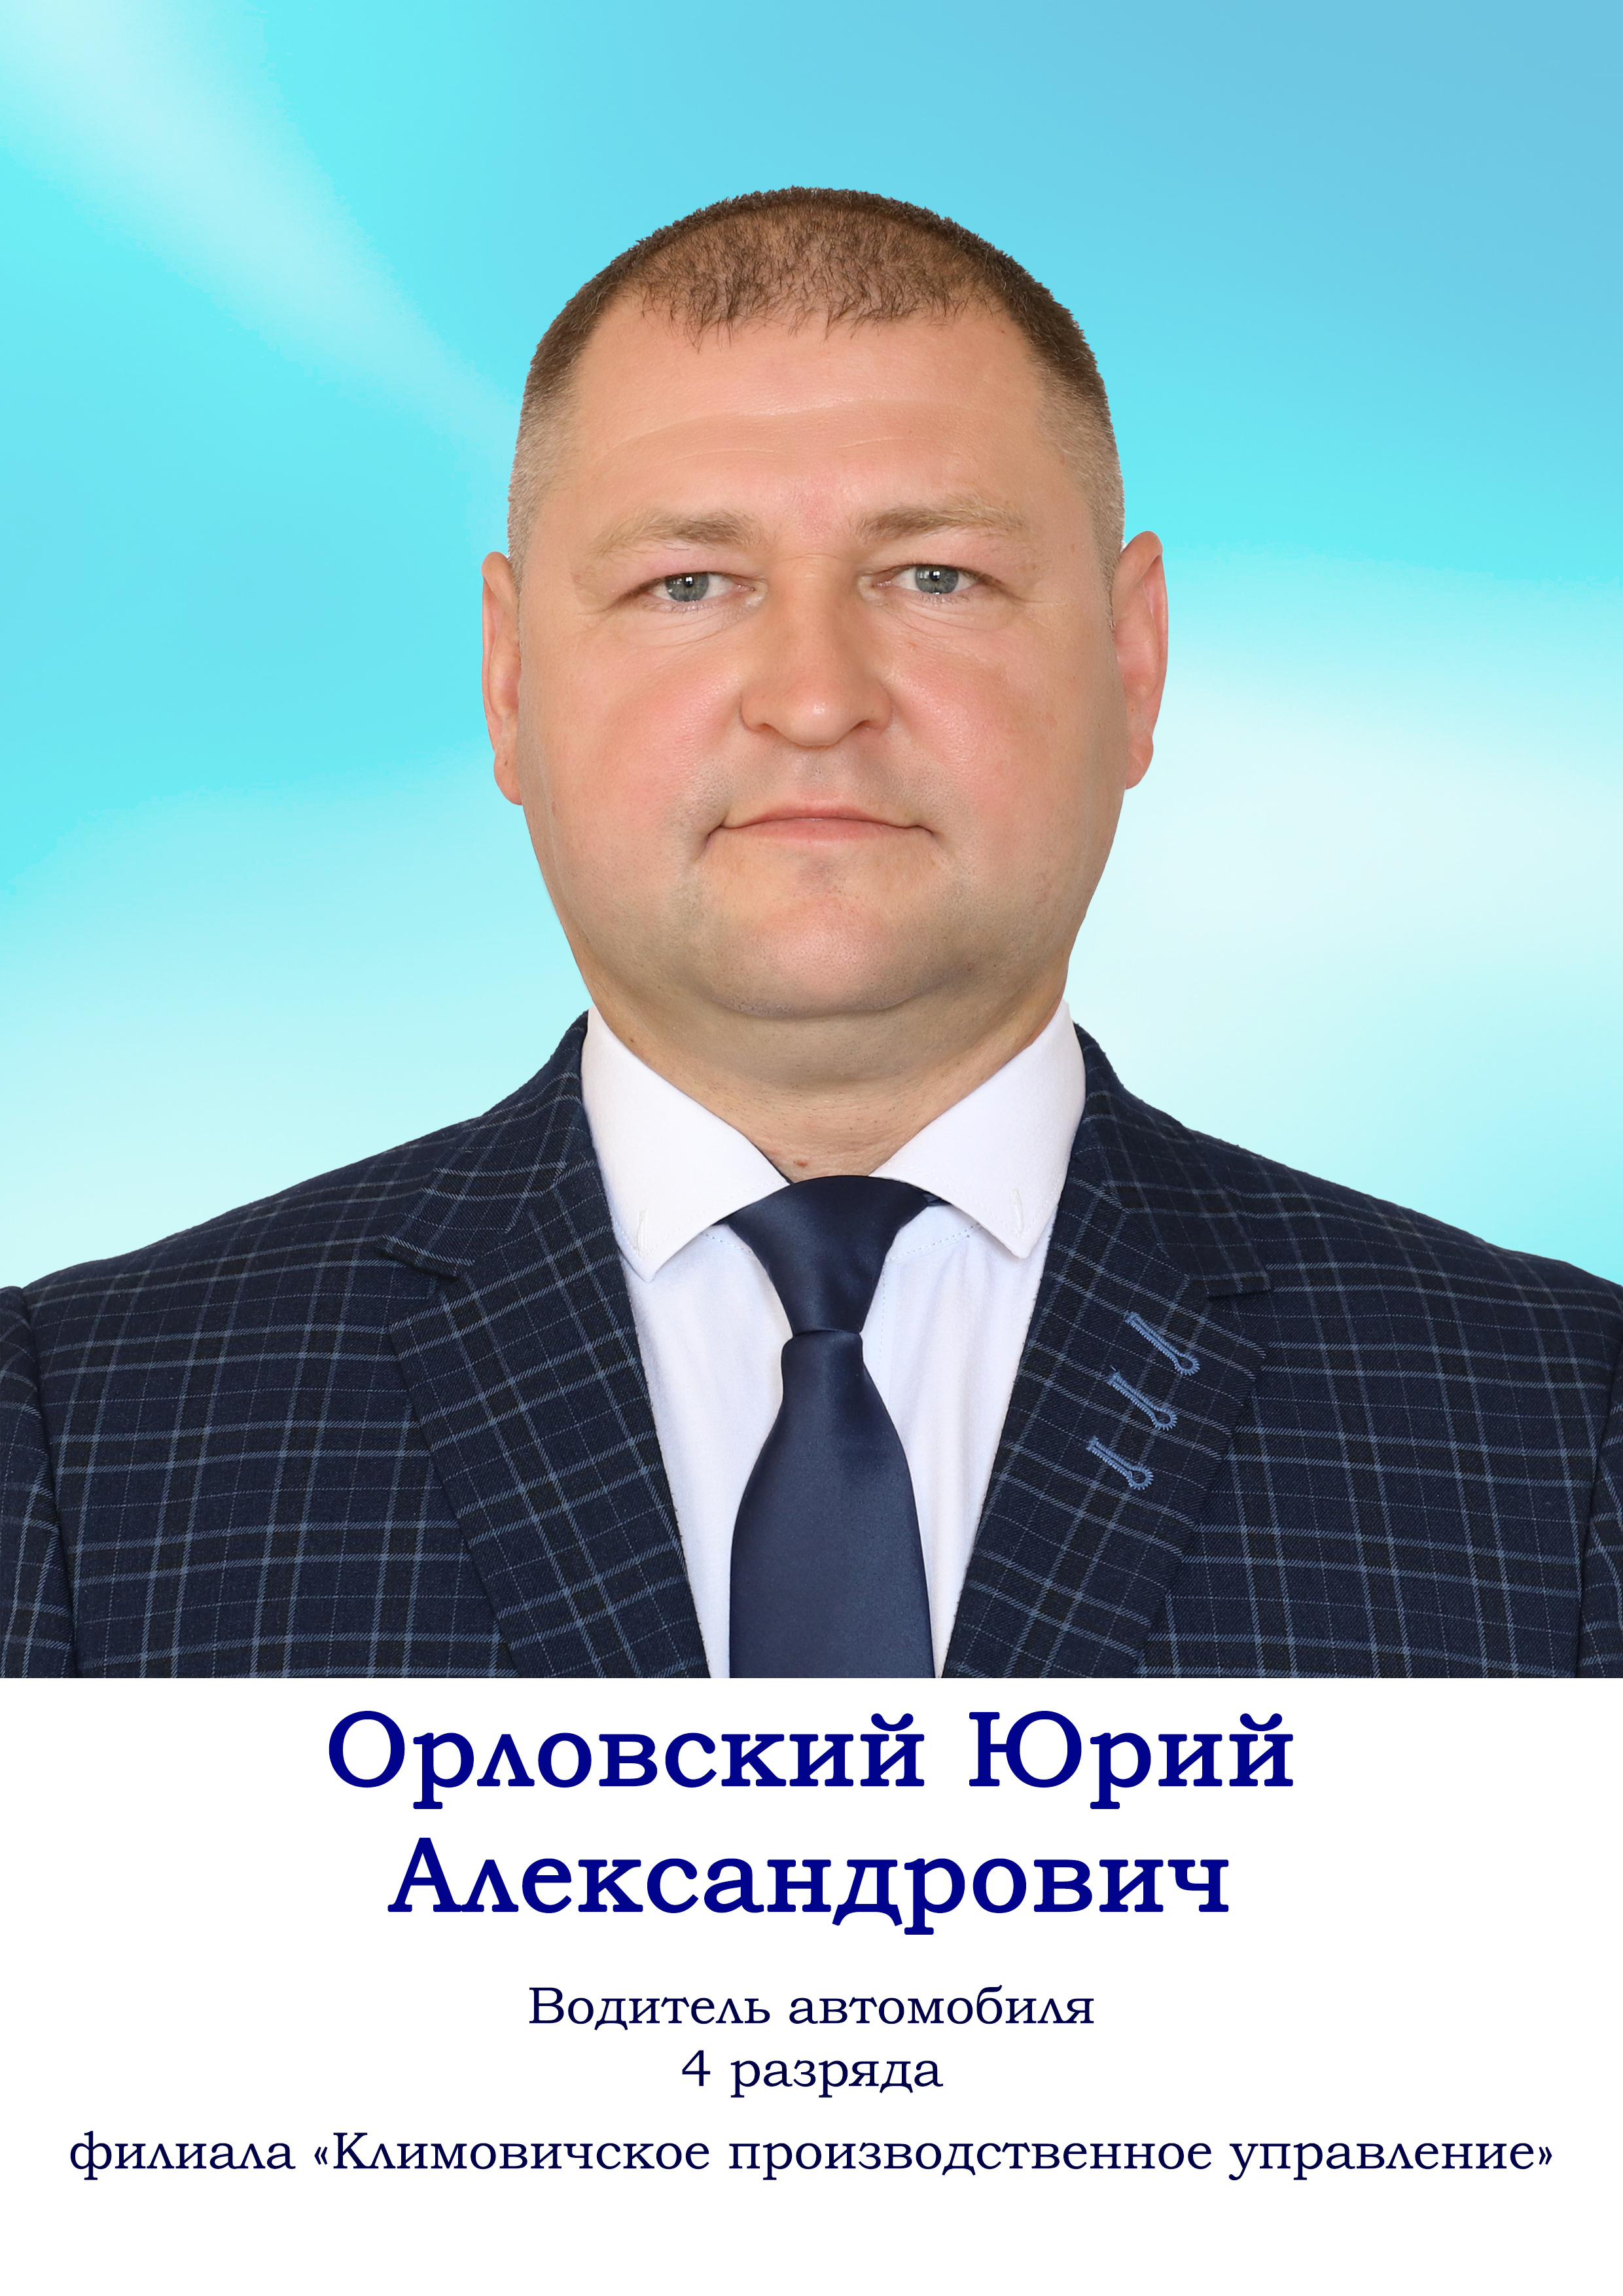 Орловский Юрий Александрович